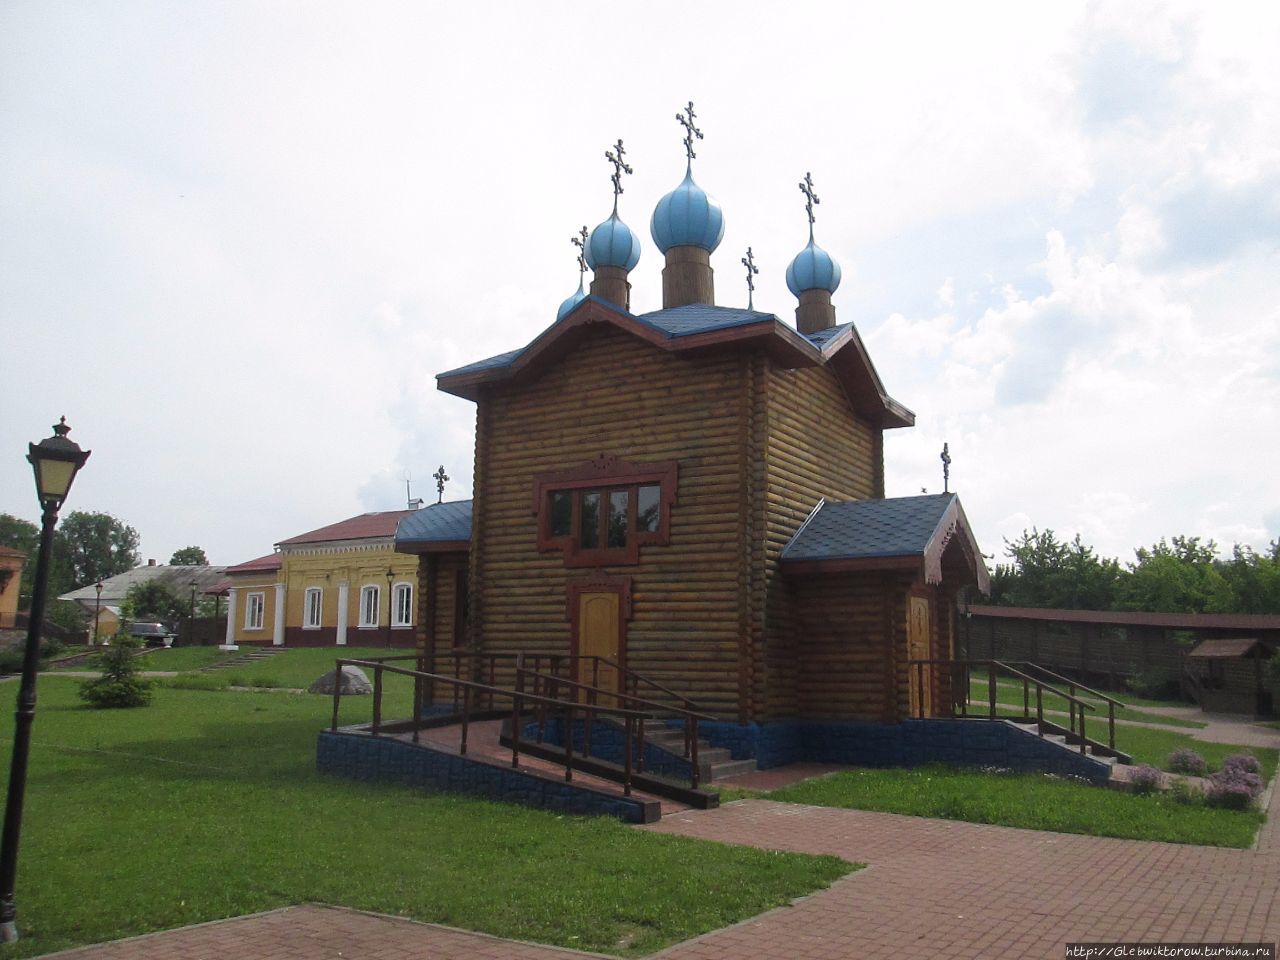 Посещение мозырского замка Мозырь, Беларусь